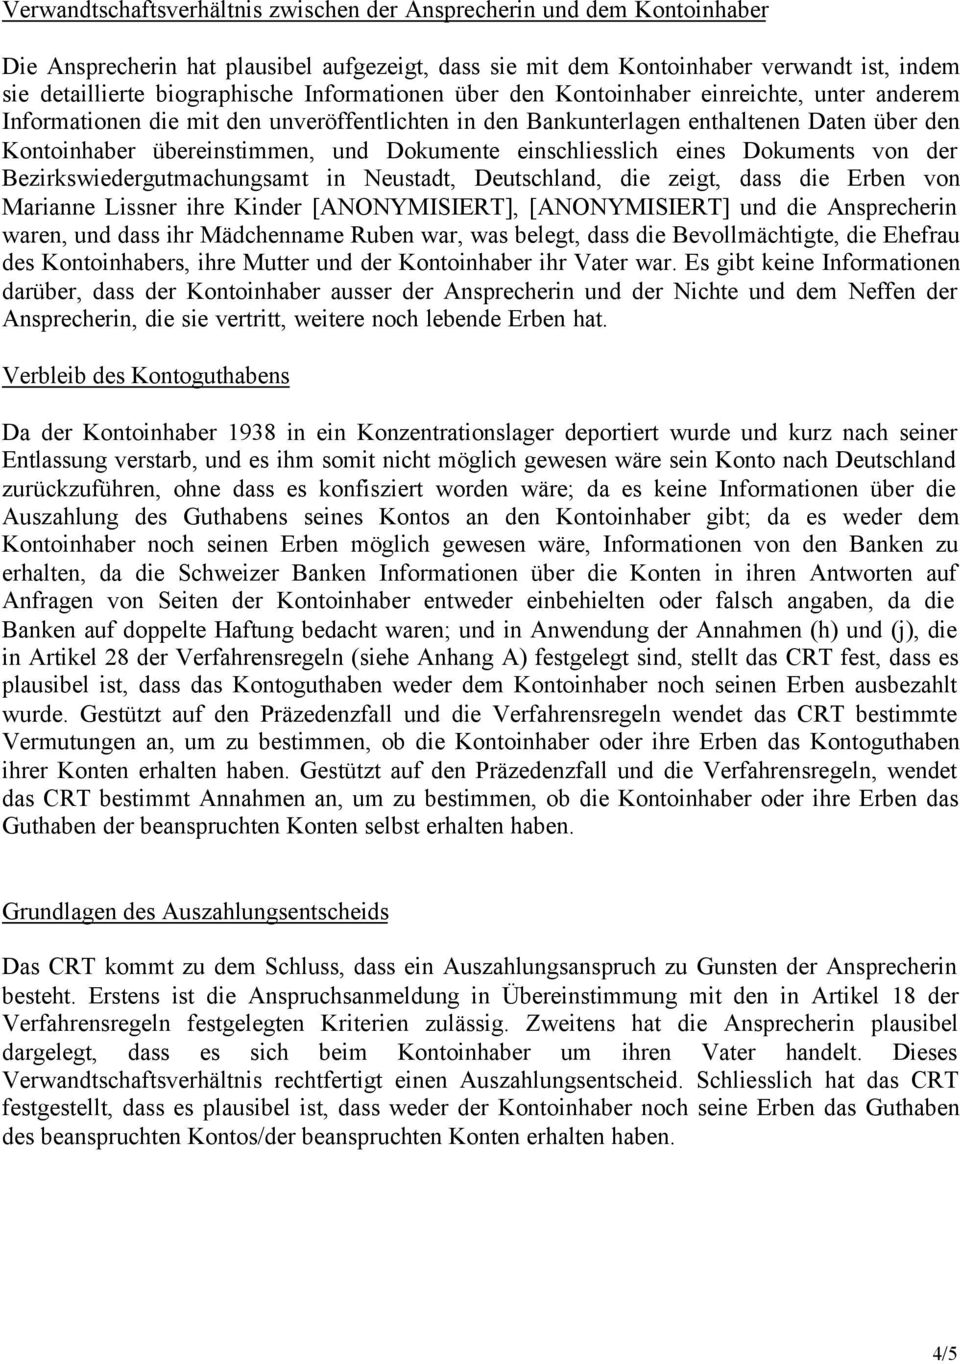 einschliesslich eines Dokuments von der Bezirkswiedergutmachungsamt in Neustadt, Deutschland, die zeigt, dass die Erben von Marianne Lissner ihre Kinder [ANONYMISIERT], [ANONYMISIERT] und die